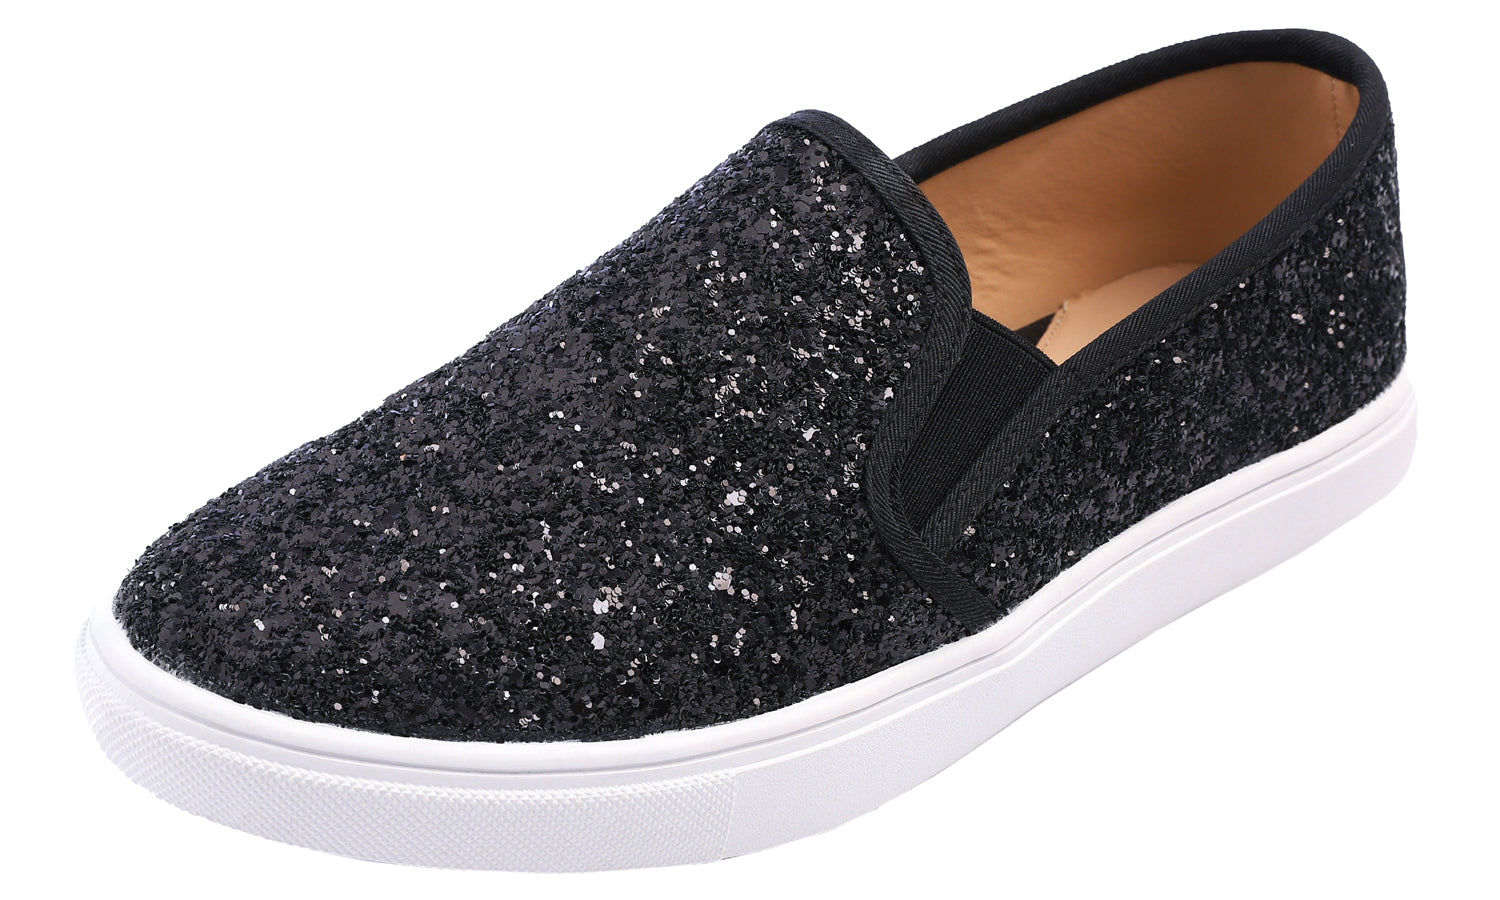 Feversole Women's Glitter Black Slip on Sneaker Casual Flat Loafers Us8.5/Eu39